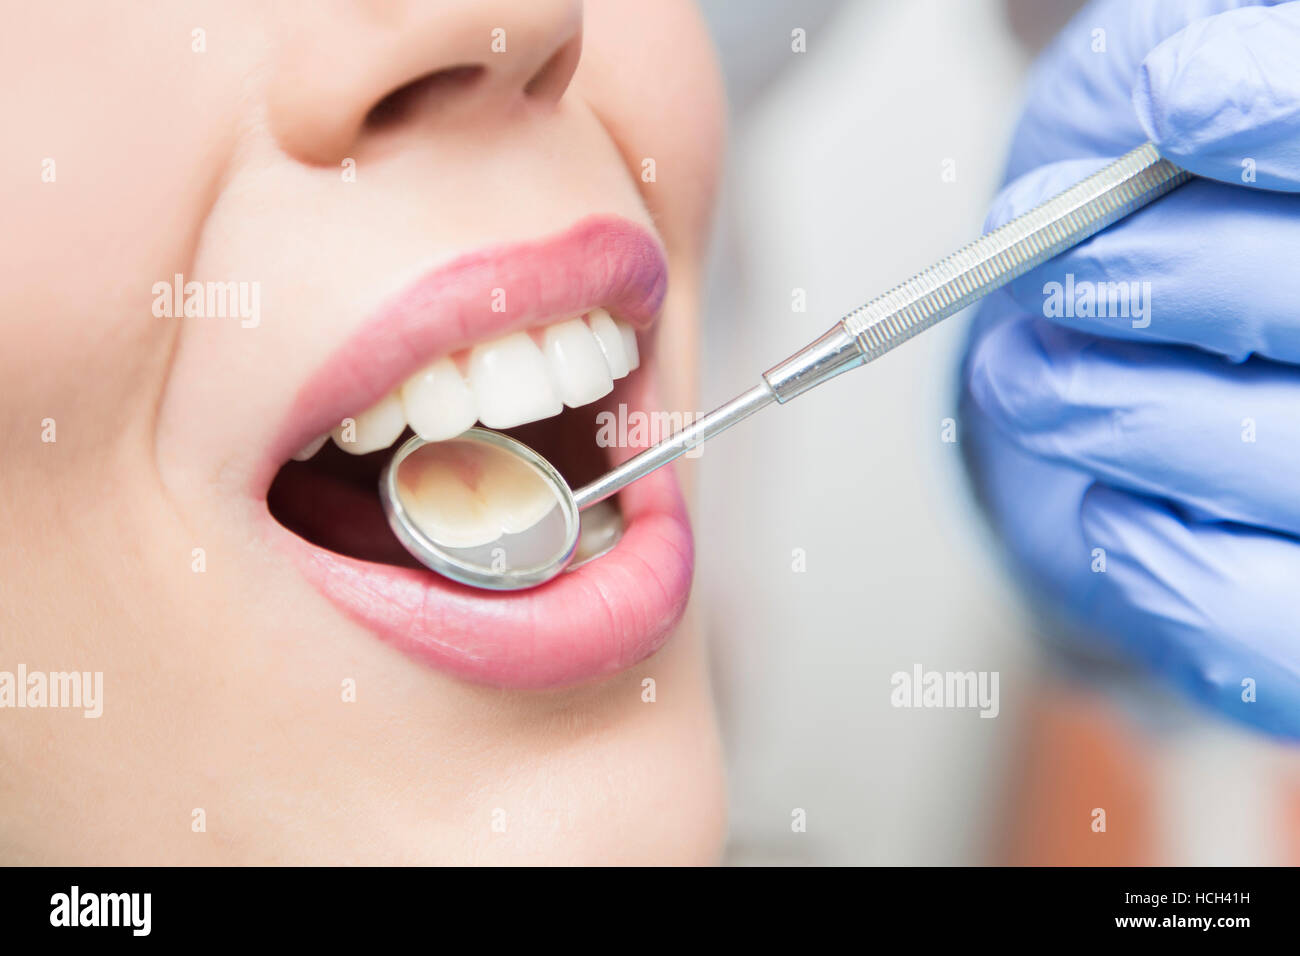 Vista ravvicinata della bocca aperta durante la somministrazione orale checkup presso il dentista Foto Stock